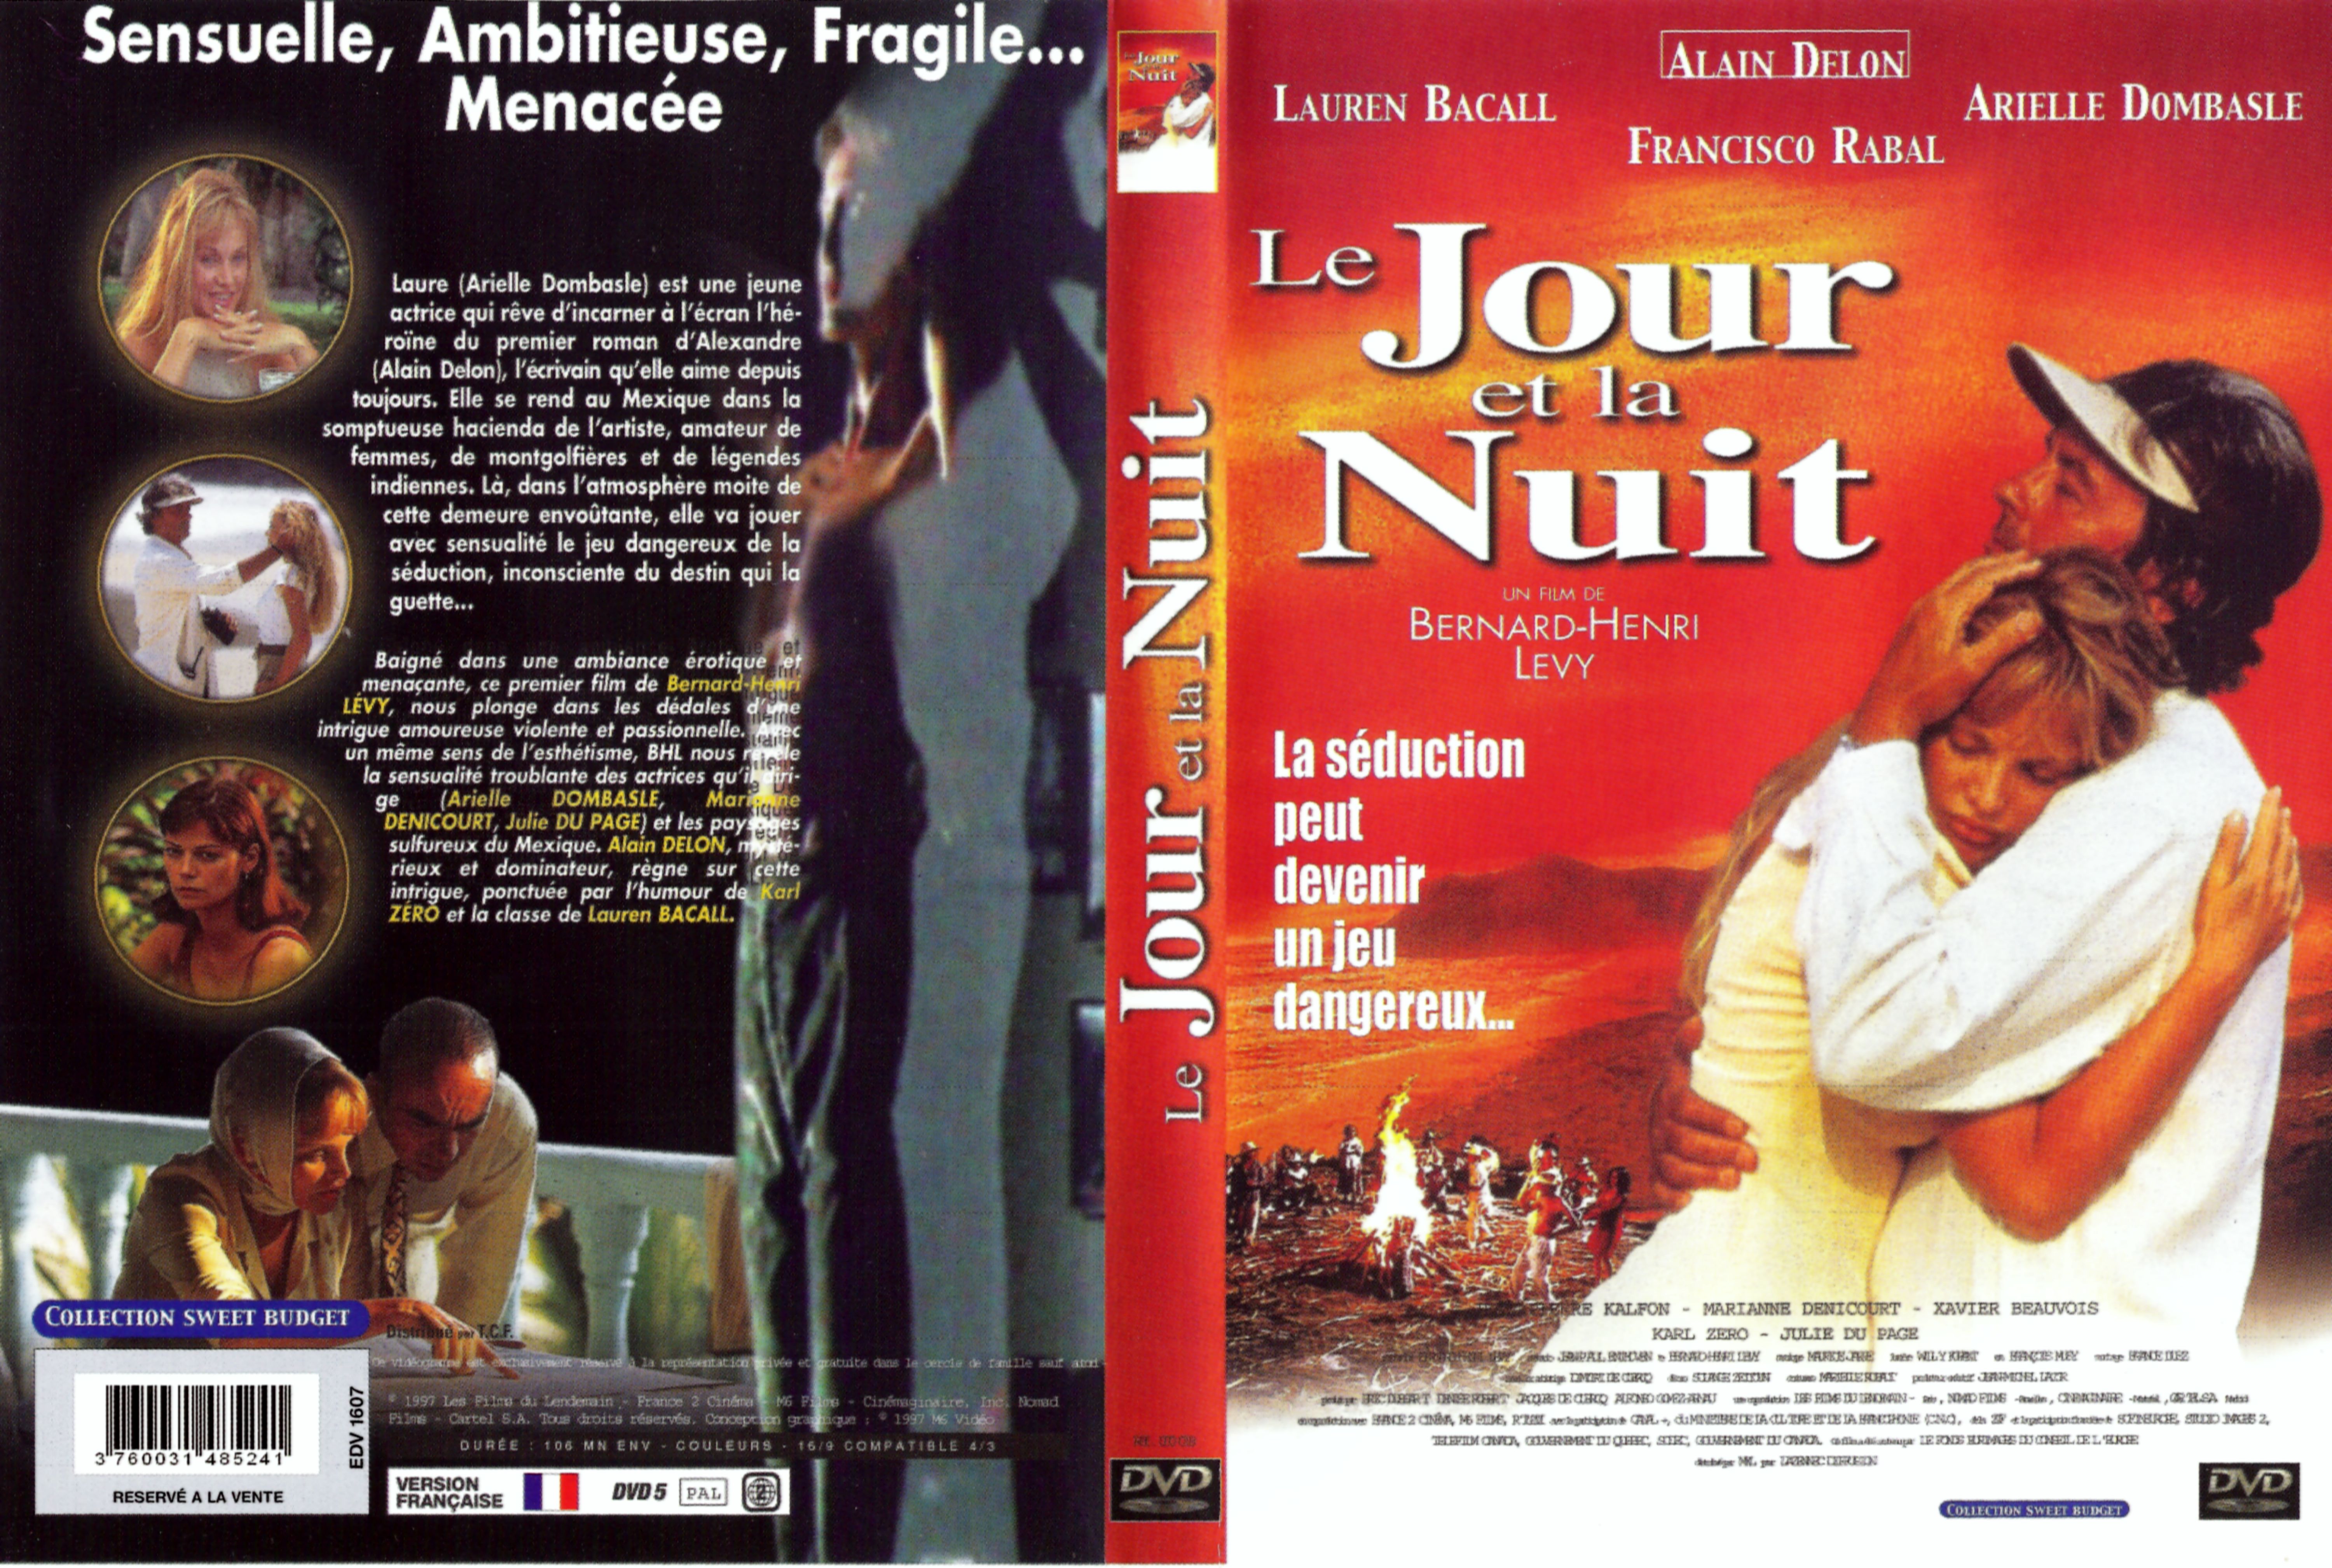 Jaquette DVD Le jour et la nuit